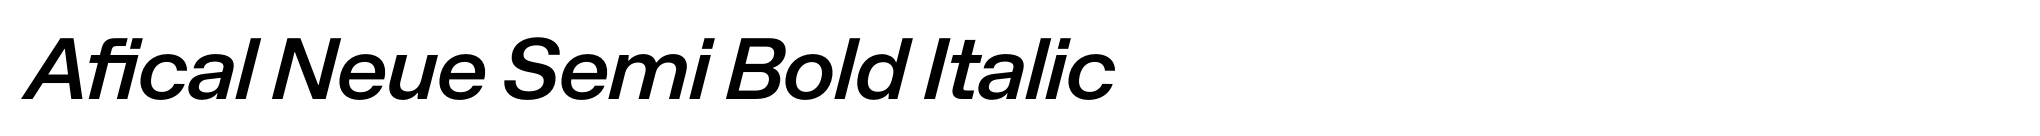 Afical Neue Semi Bold Italic image